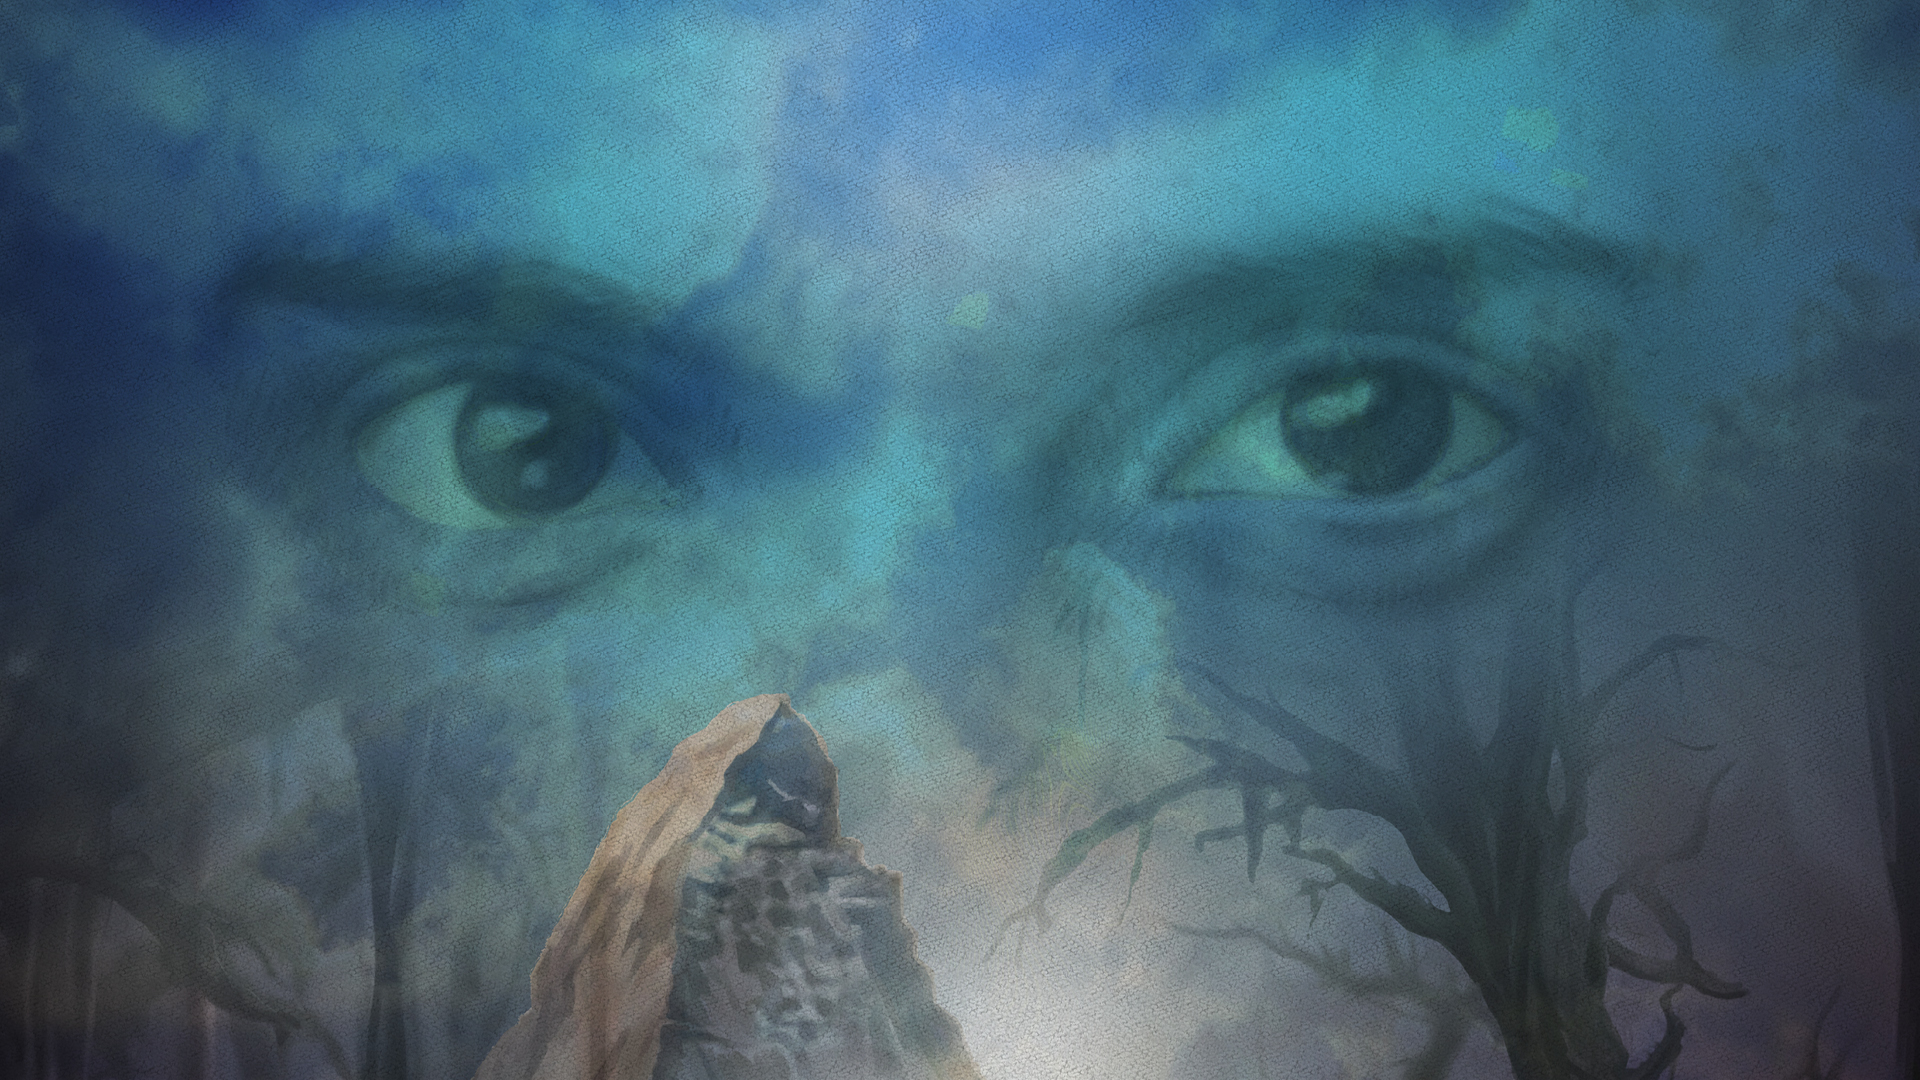 Berg och döda träd under en blå himmel med två stora ögon i. Illustration.